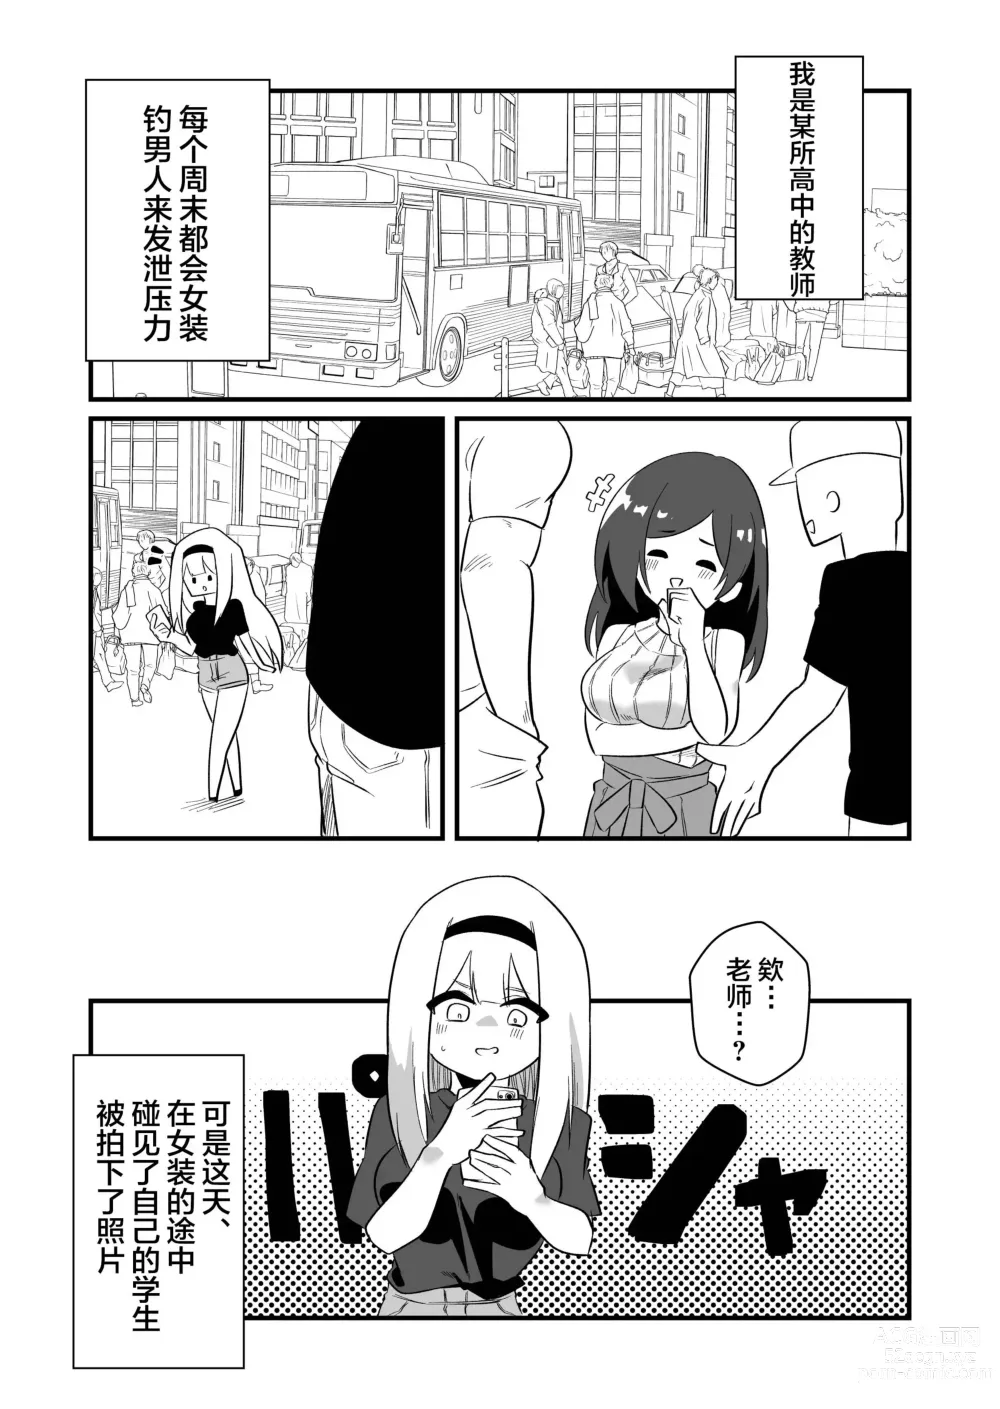 Page 2 of doujinshi Kyousei Josou Dansei Kyoushi